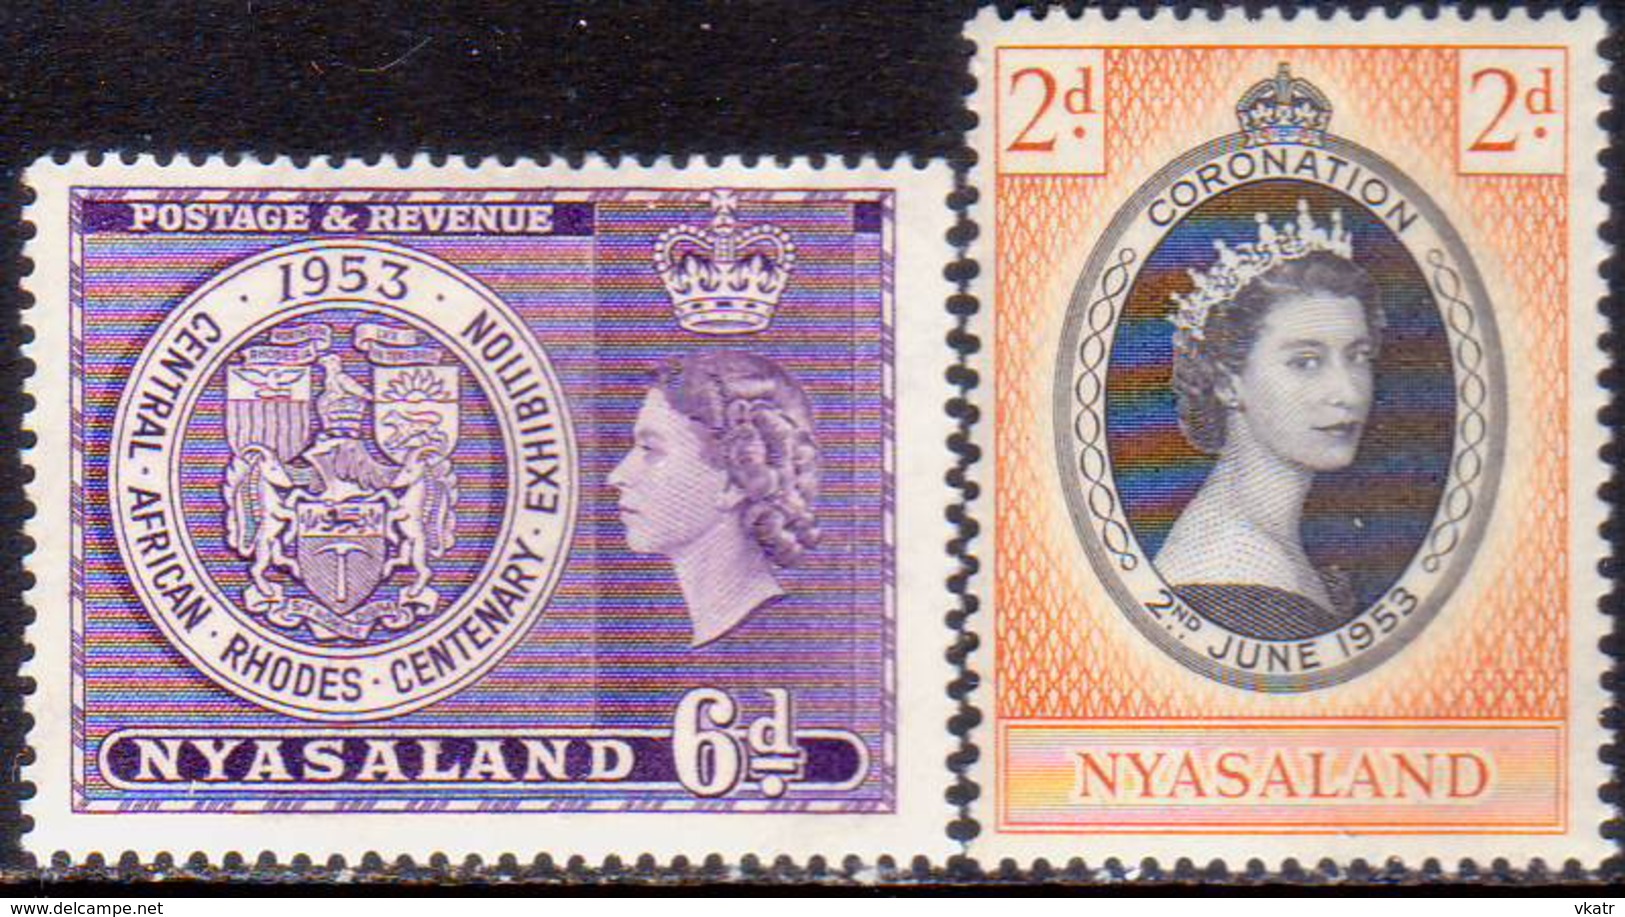 NYASALAND PROTECTORATE 1953 SG #171,172 Two Issues MNH Rhodes Centenary Exhibition, Coronation - Nyasaland (1907-1953)